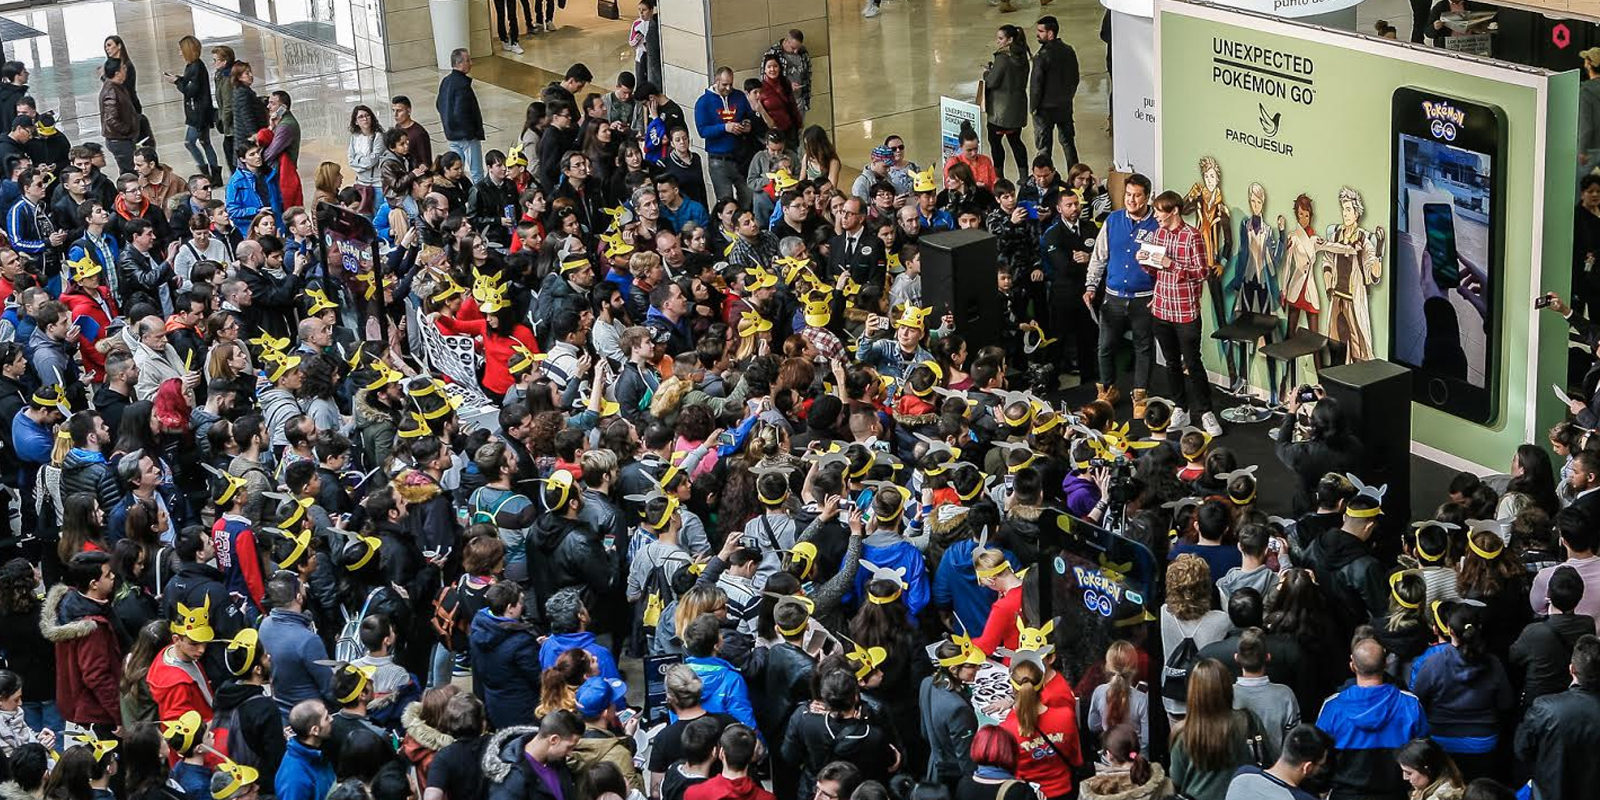 2.800 jugadores de 'Pokémon Go' se reúnen en el centro comercial Parquesur de Madrid